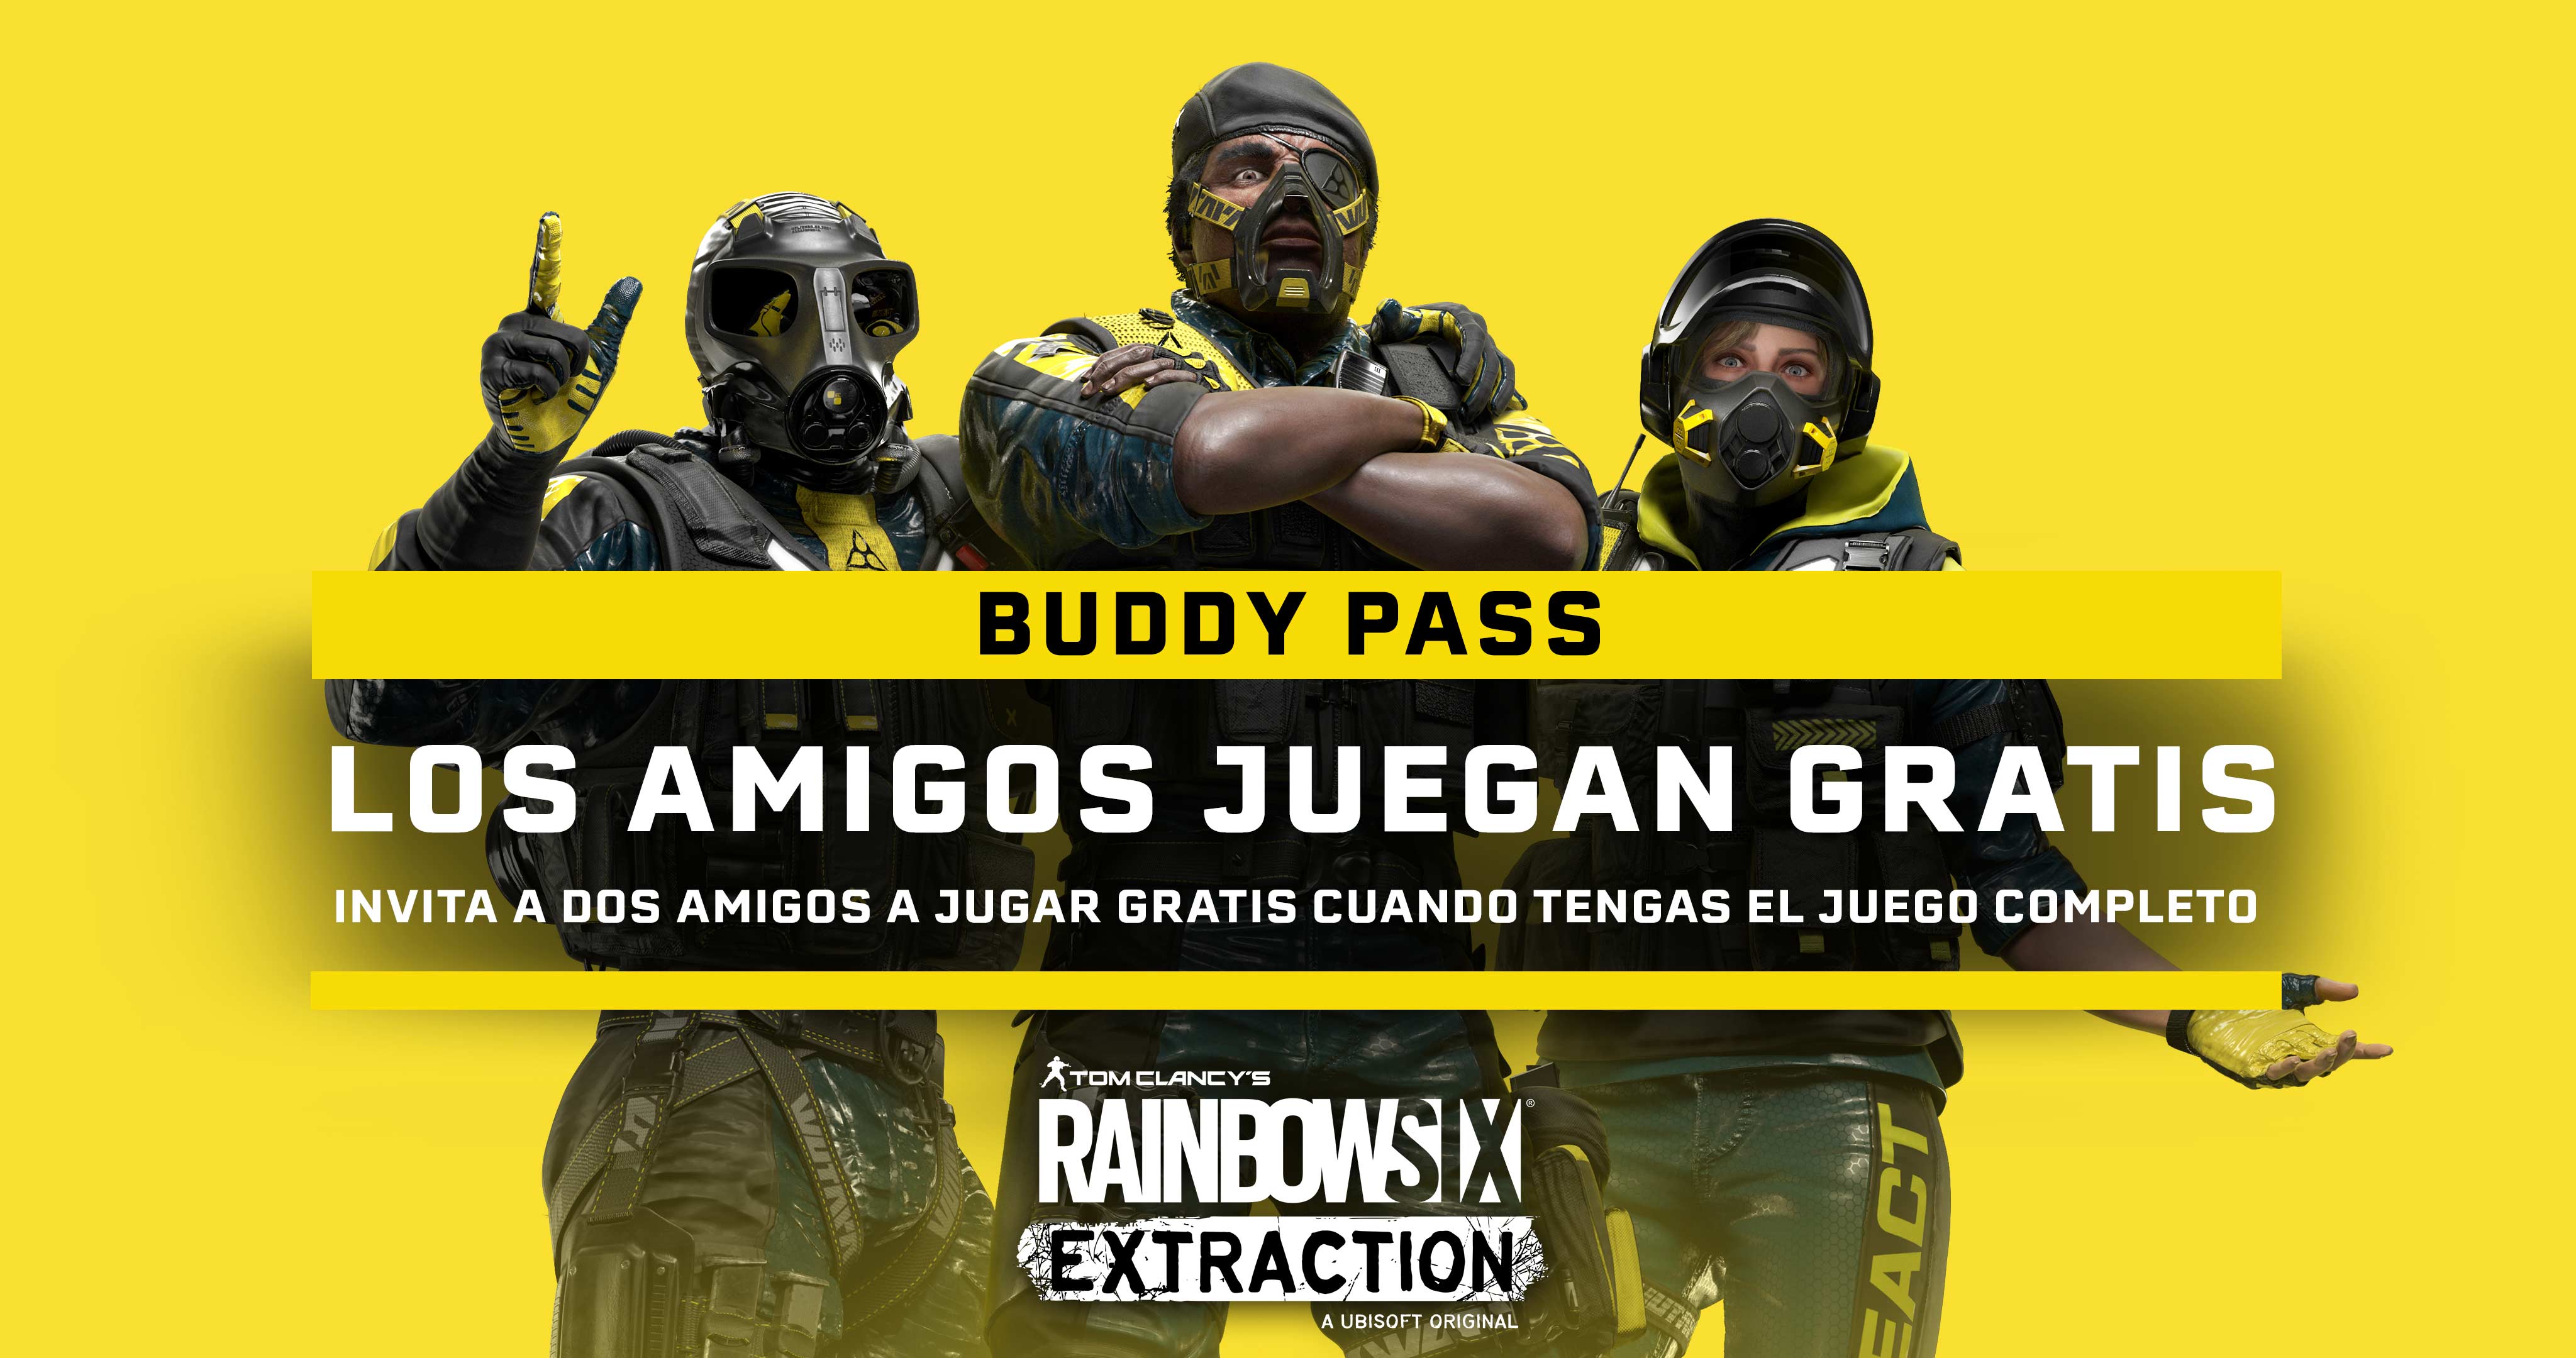 El Buddy Pass es una función incluida en el juego completo de Rainbow Six Extraction, que te permitirá disfrutar de 14 días de juego con dos amigos desde cualquier plataforma aunque no tengan una copia.